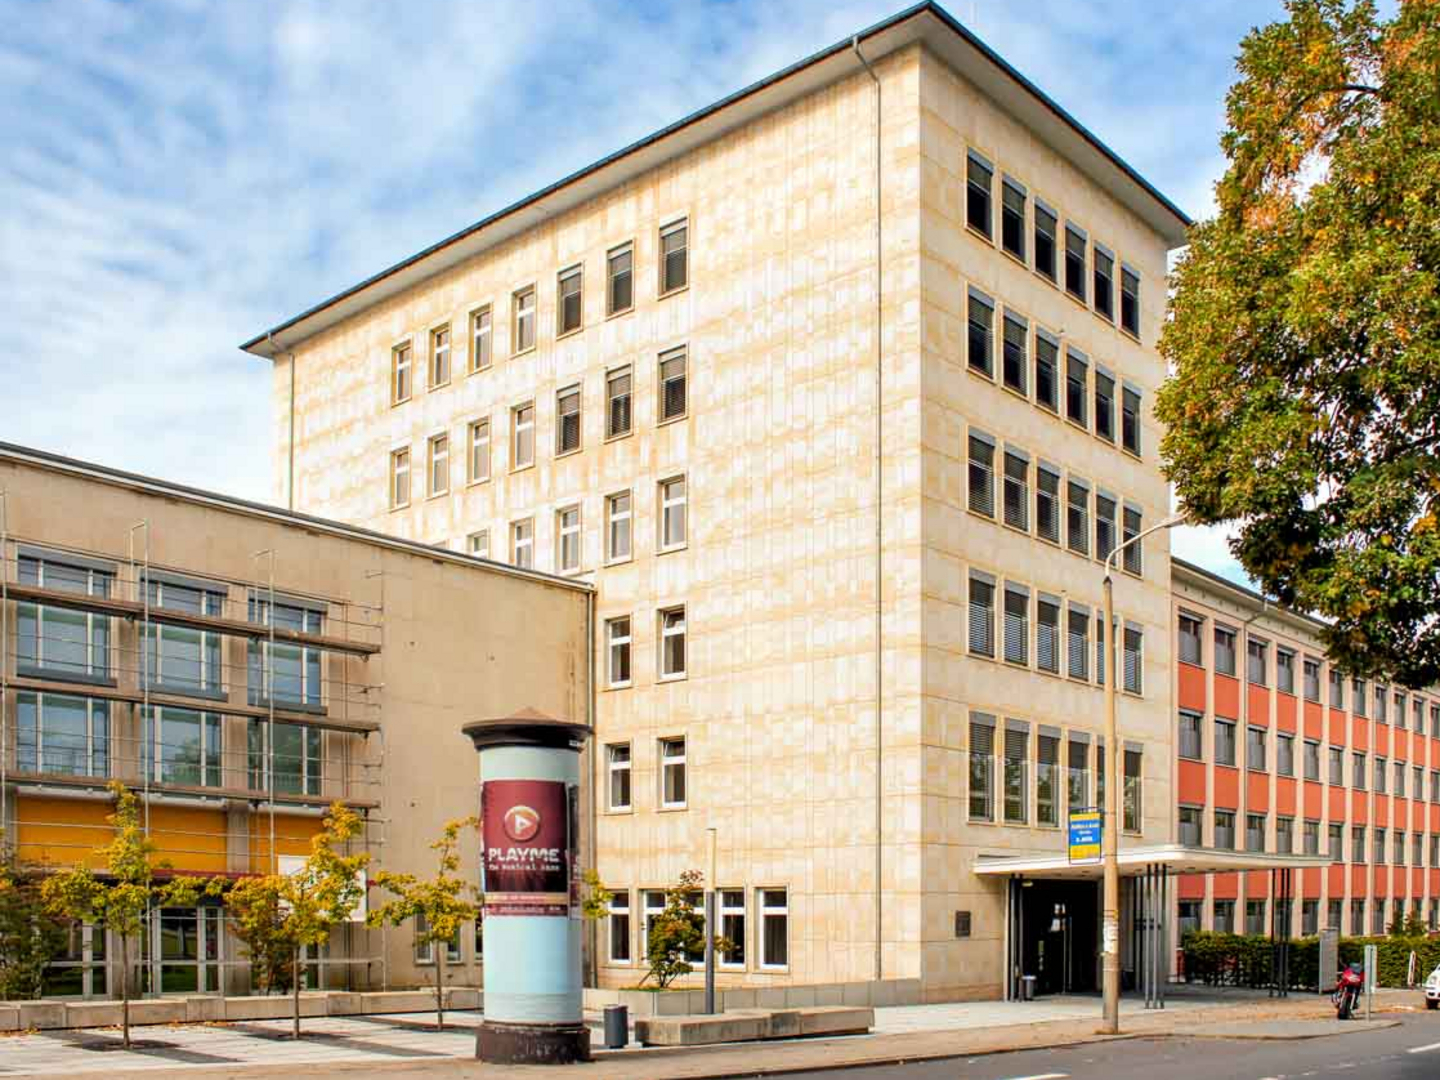 Markanter Turmbau der TU Chemnitz in der Reichenhainer Straße.